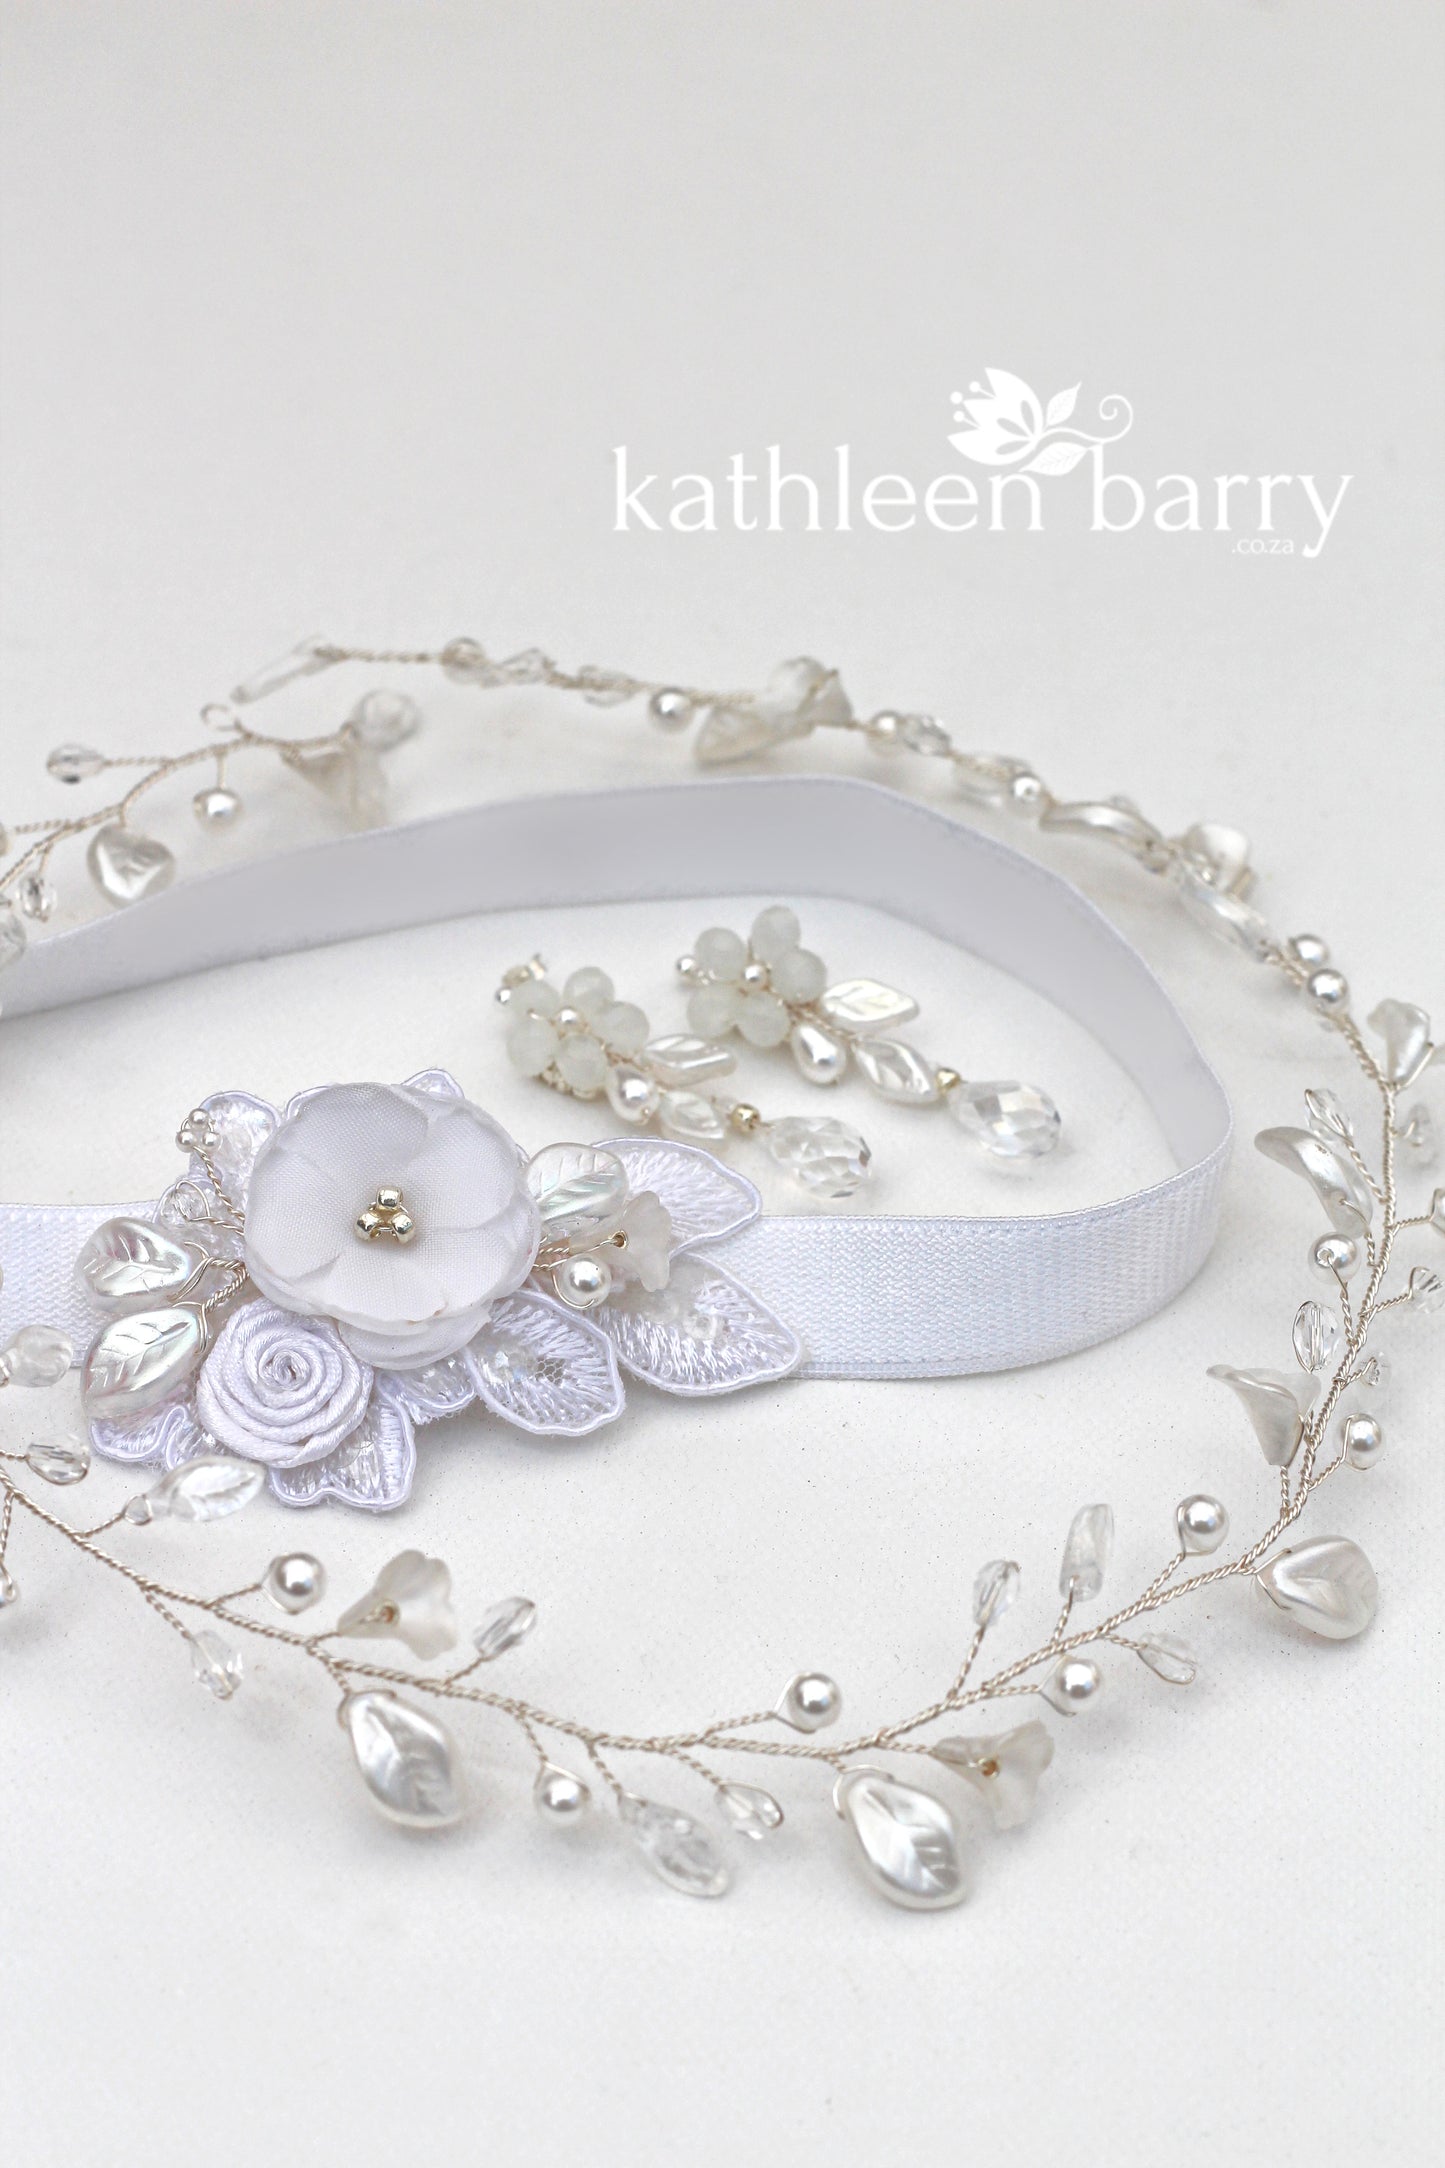 Taryn heirloom garter - white garter - color options available